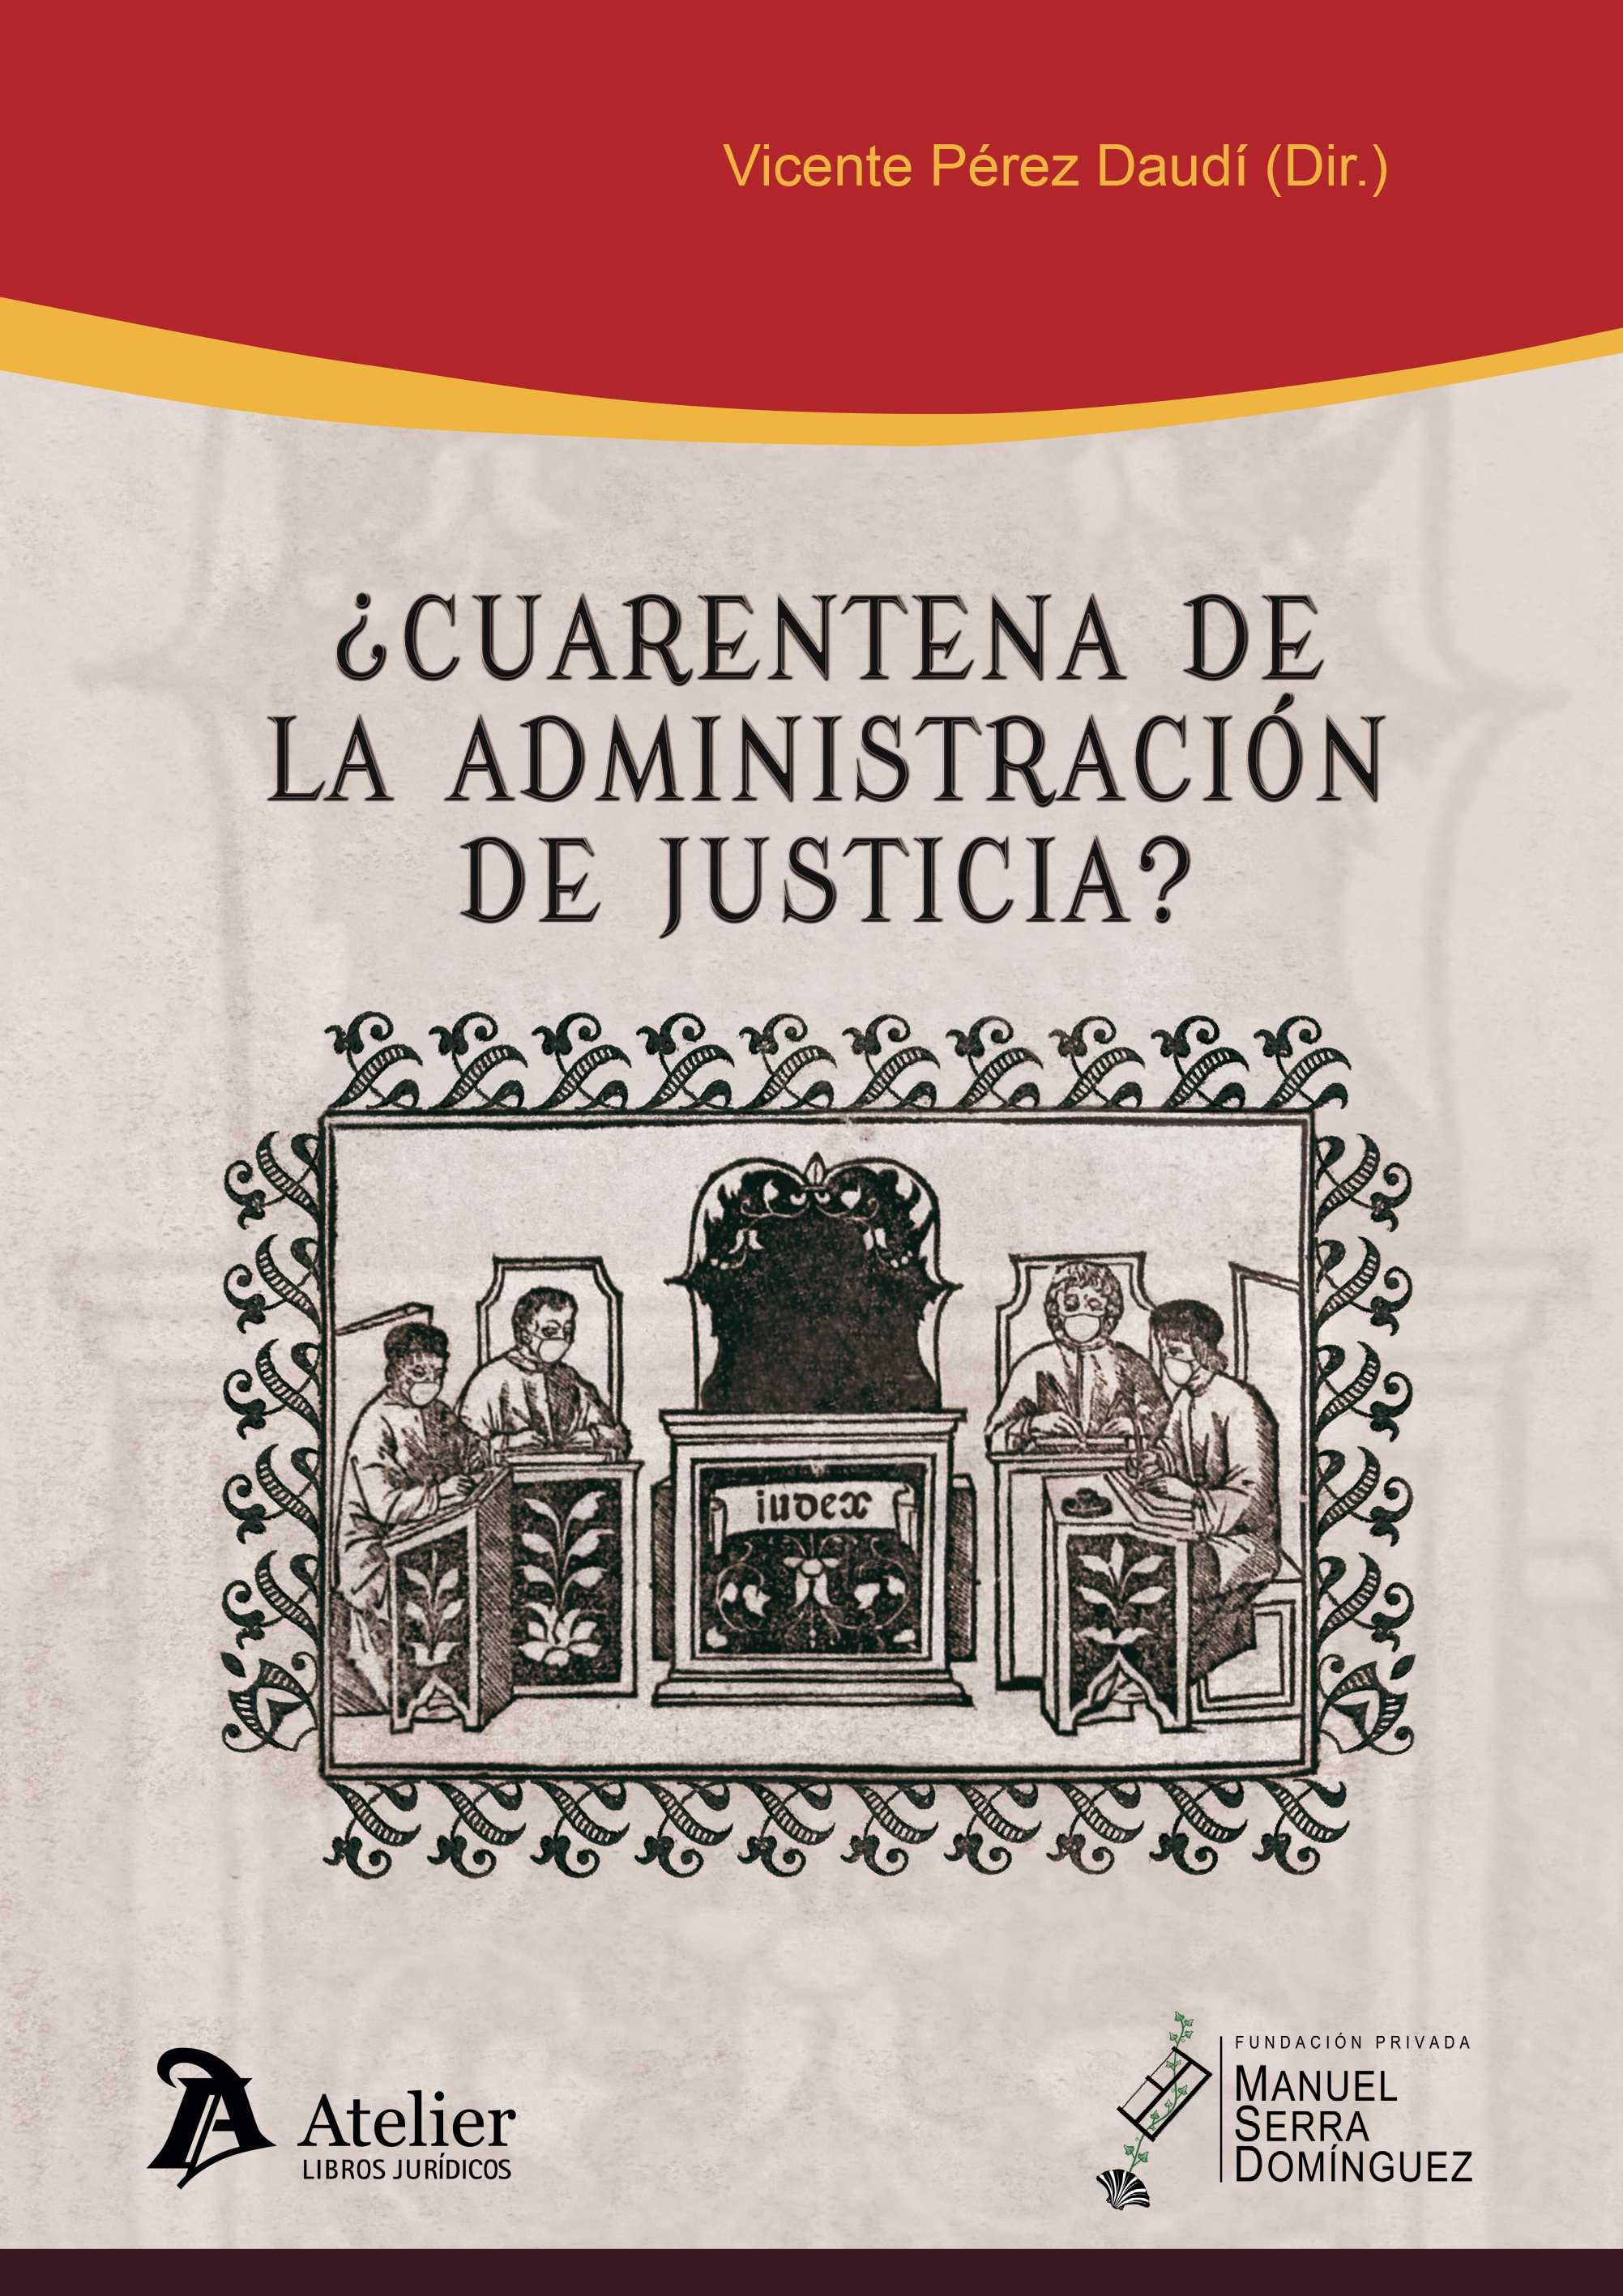 Imagen de portada del libro ¿Cuarentena de la administración de justicia?